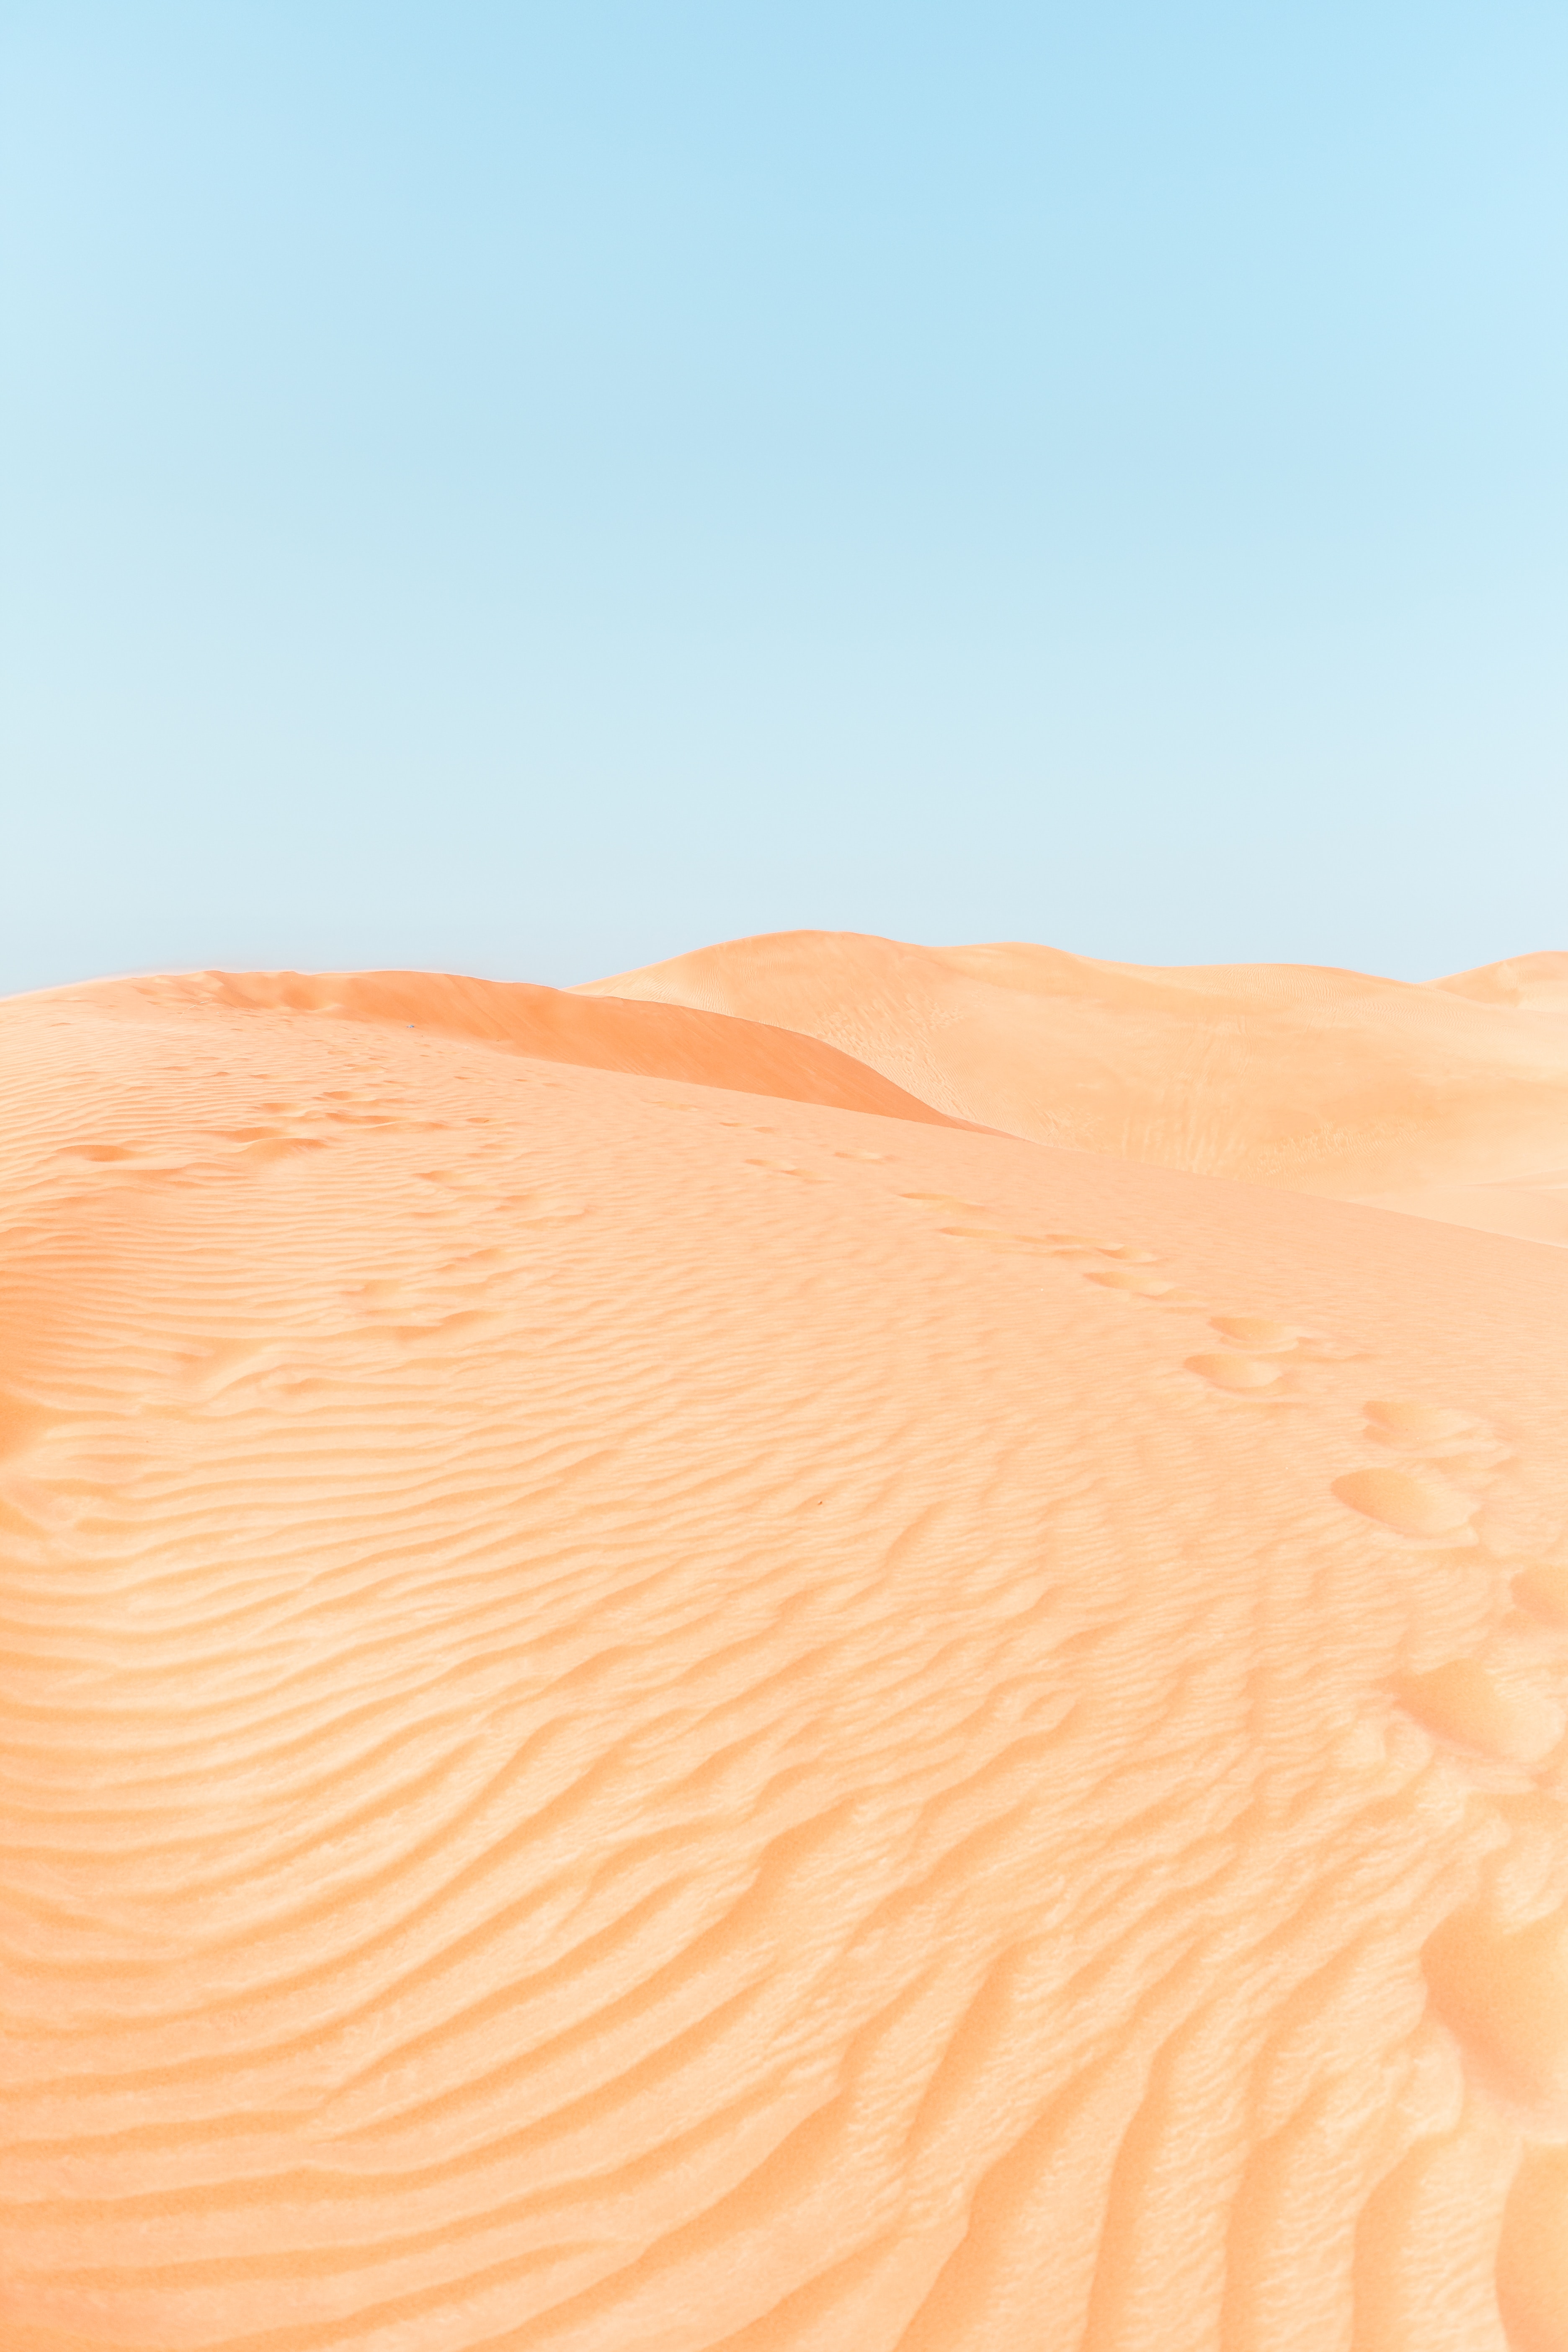 Dunes Cool HD